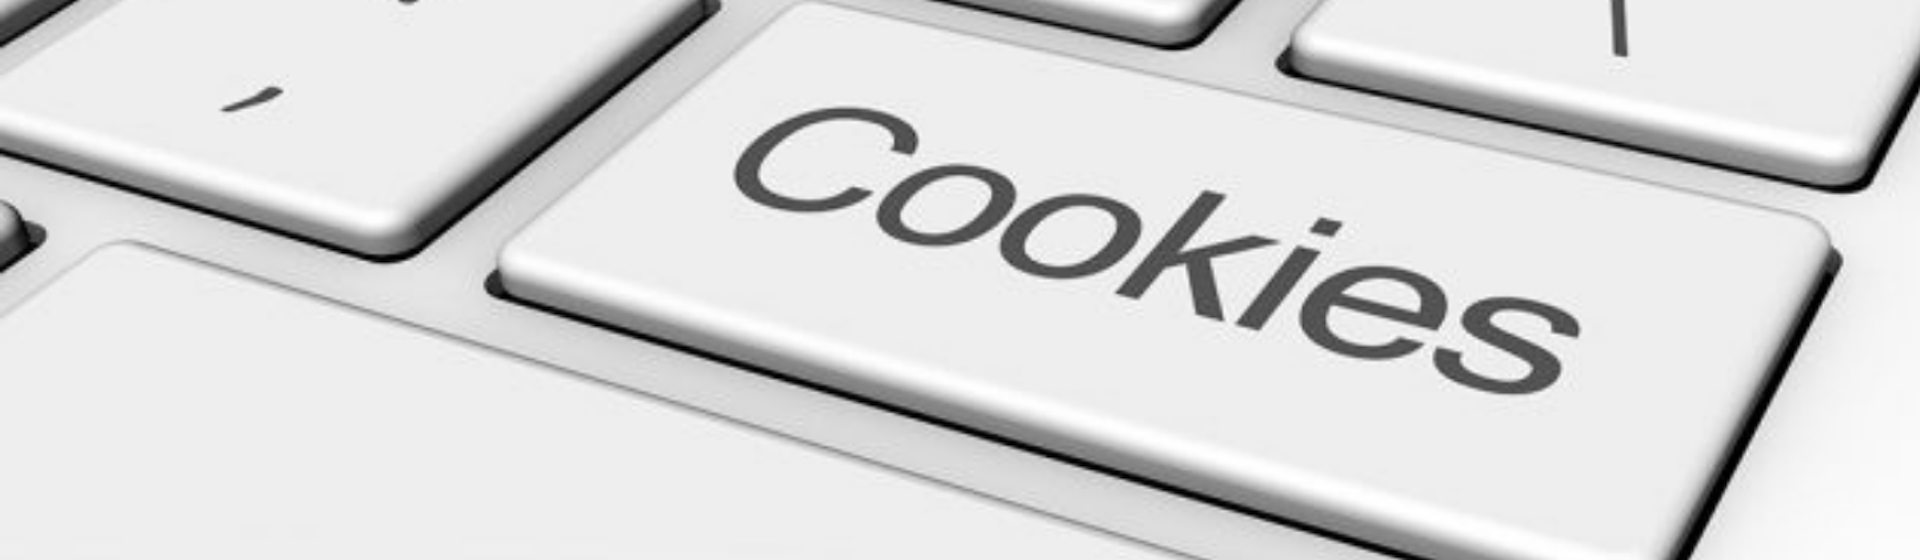 ¿Qué son las cookies de una página web? ¡Conoce todo sobre este recurso!